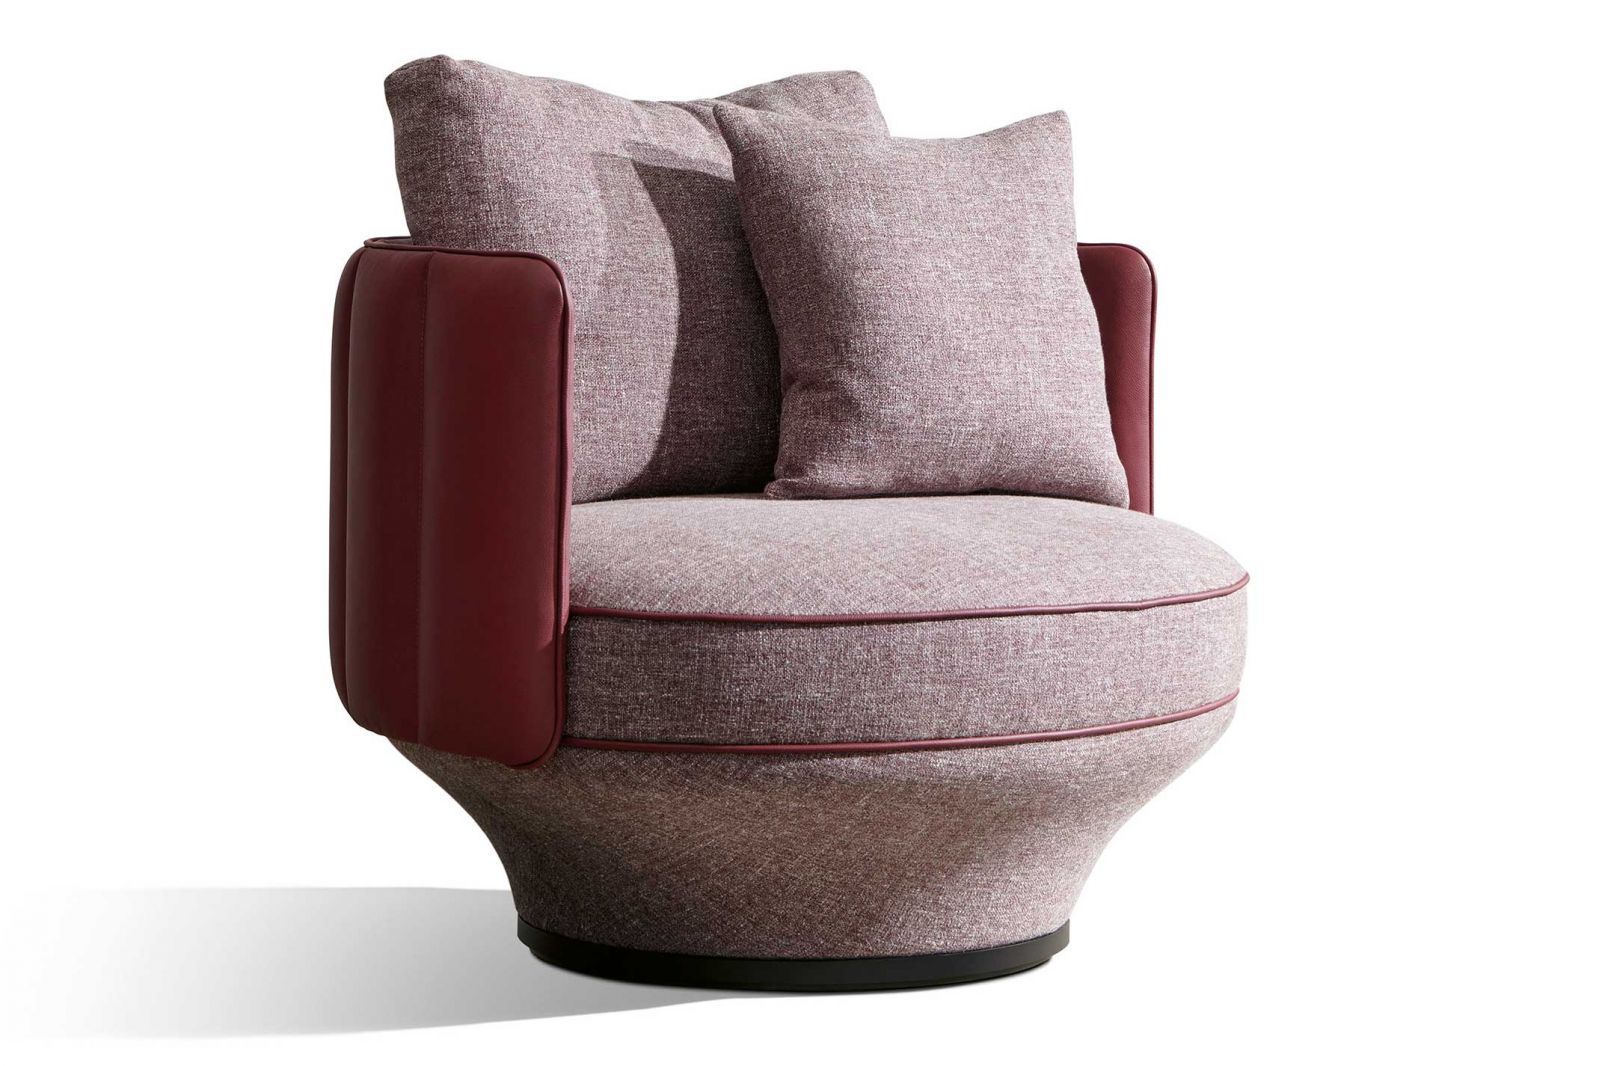 Zuletzt erweiterte Luca Nichetto seine Kollektion «Paradis Bird» um einen Sessel mit geschlossenem Rücken. Taschenfederkerne und Daunenfüllungen sorgen für hervorragenden Komfort.